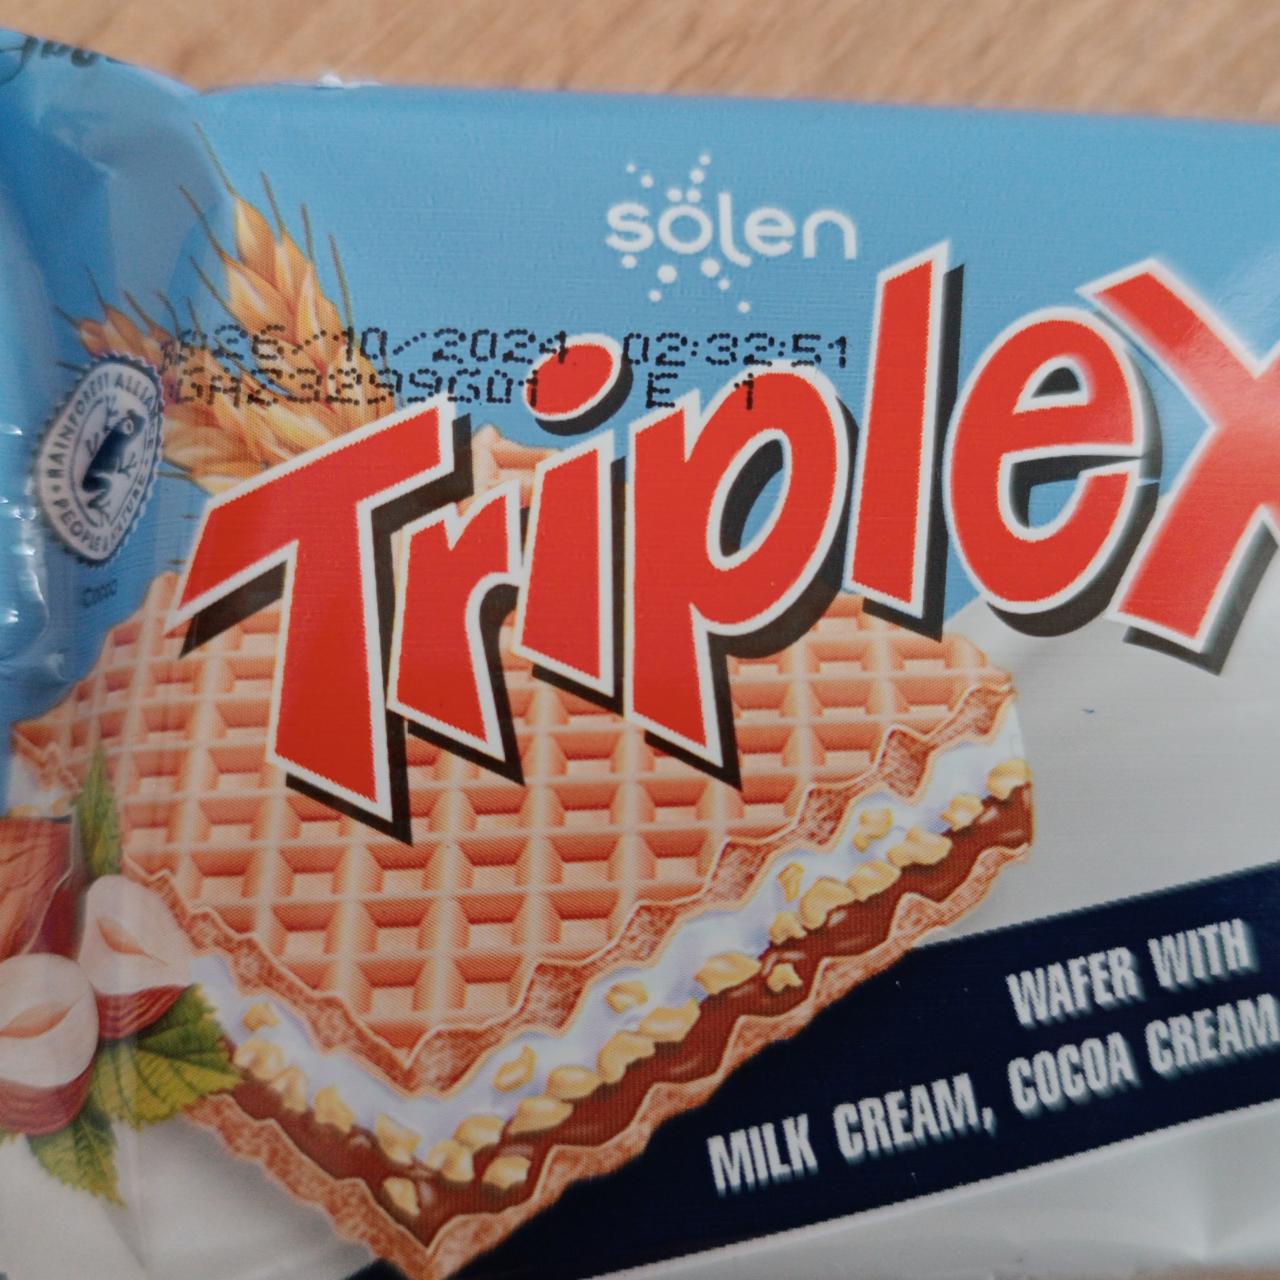 Fotografie - Triplex wafer with milk cream, cocoa cream Sölen